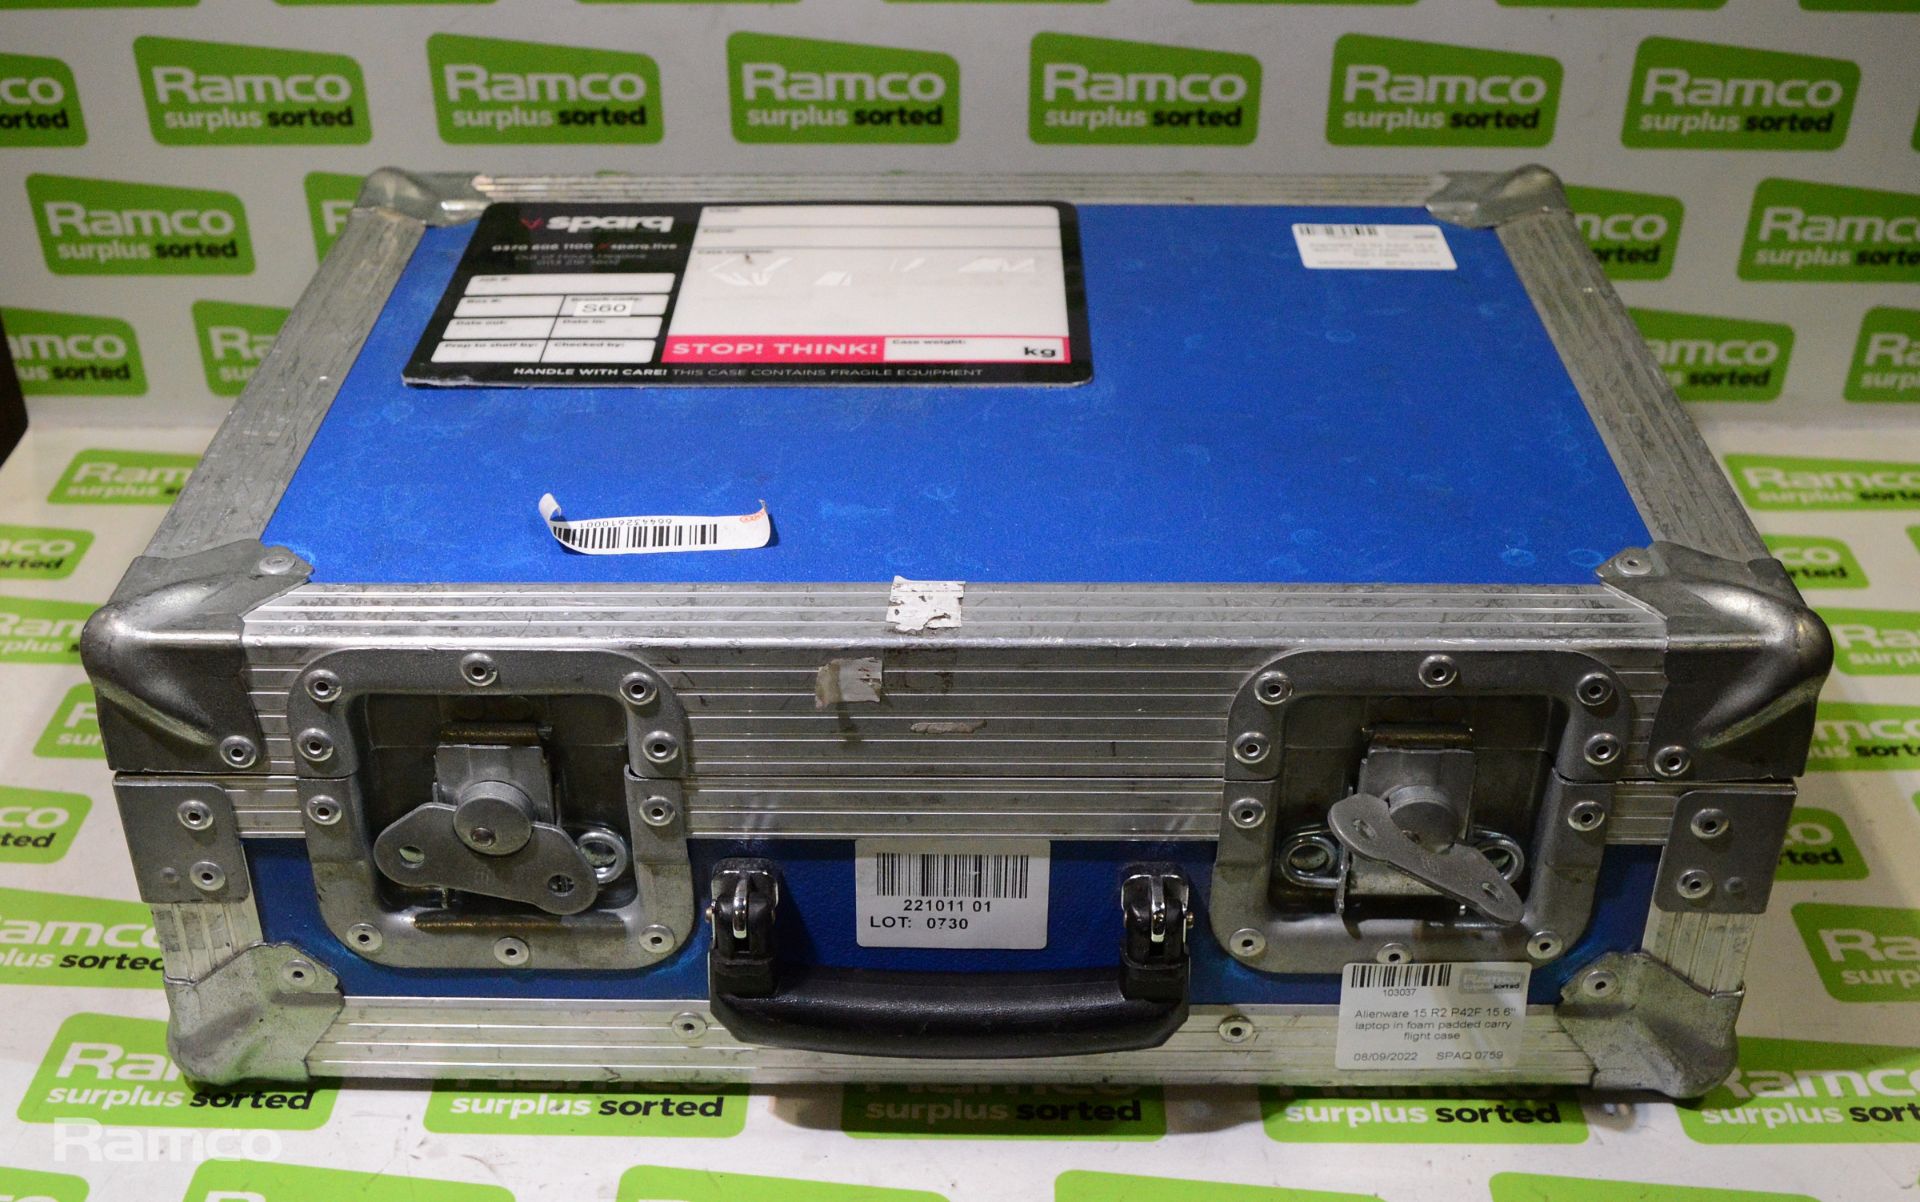 Alienware 15 R2 P42F 15.6" laptop in foam padded carry flight case - Image 4 of 5